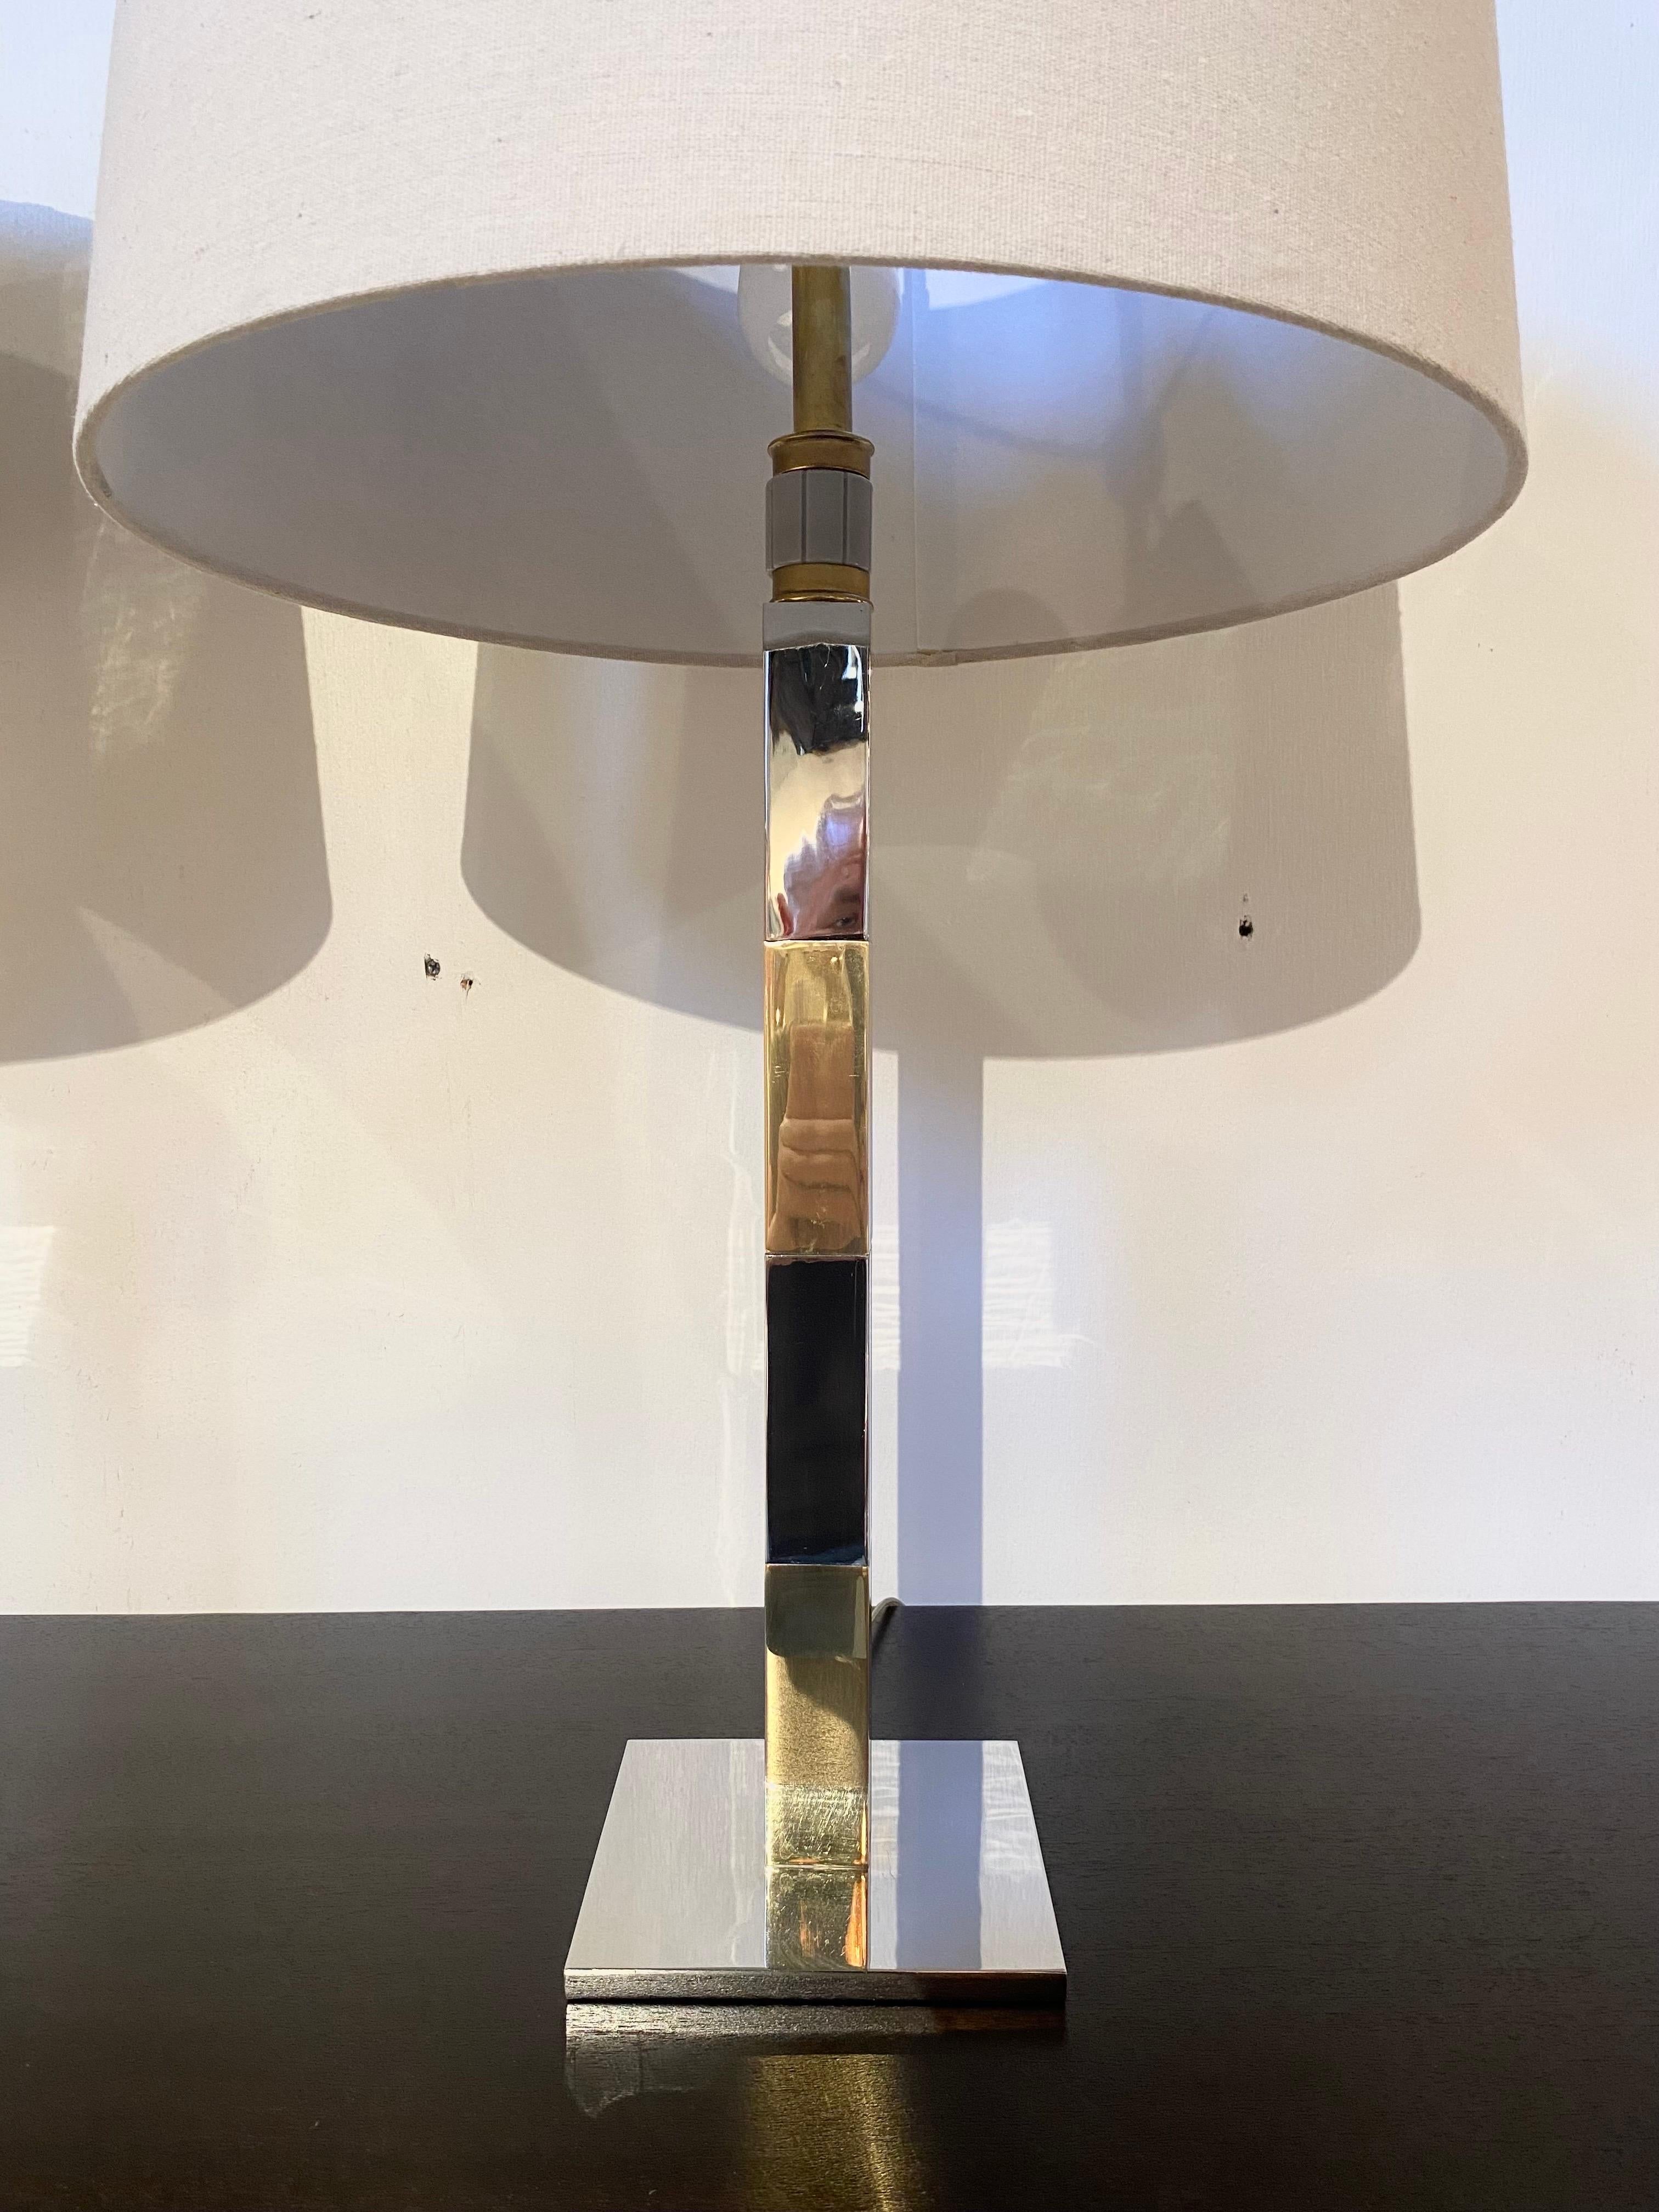 Ein atemberaubendes Lampenpaar von Stewart Ross James für Hansen Lighting. Diese sind aus Chrom und Messing mit der charakteristischen Hansen-Drei-Cluster-Leuchte und dem drehbaren Drei-Wege-Schalter. Jeder ist in sehr gutem Zustand mit kleinen